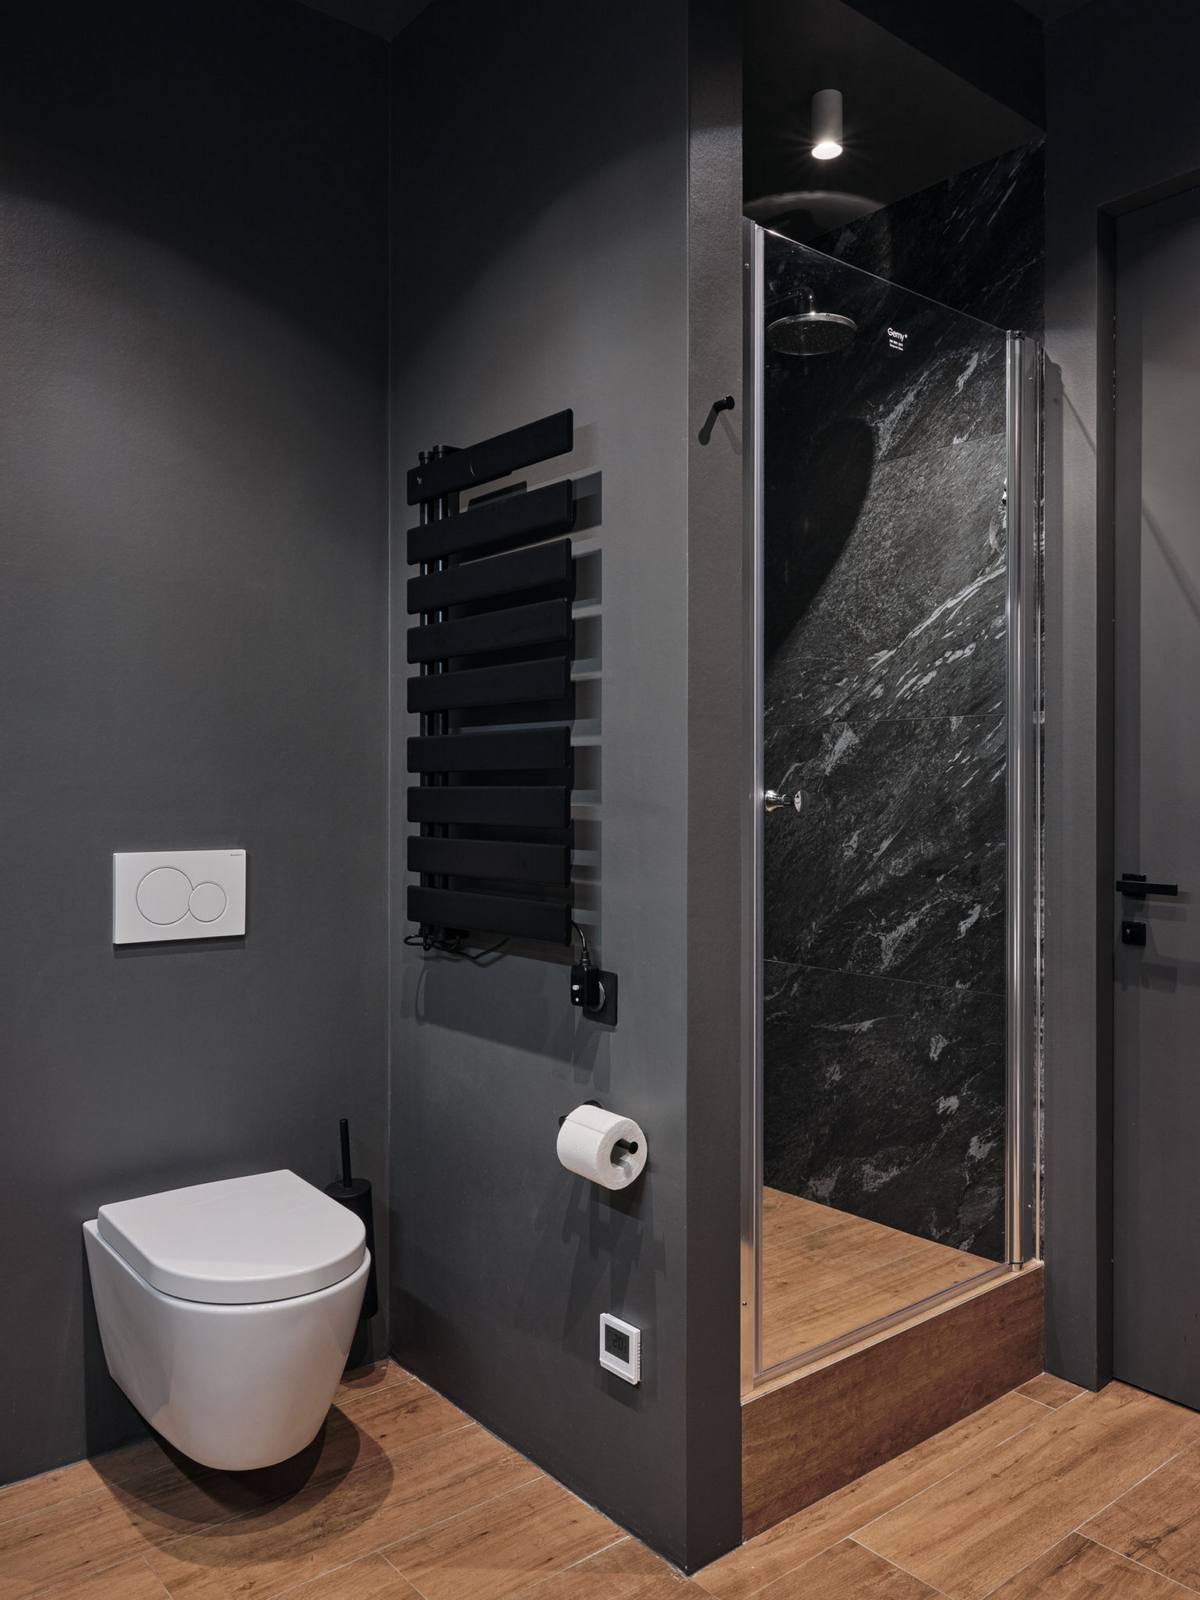 Phòng tắm và nhà vệ sinh sử dụng gam màu xám đậm kết hợp gỗ tự nhiên tạo sự khác biệt hẳn so với những khu vực chức năng còn lại.